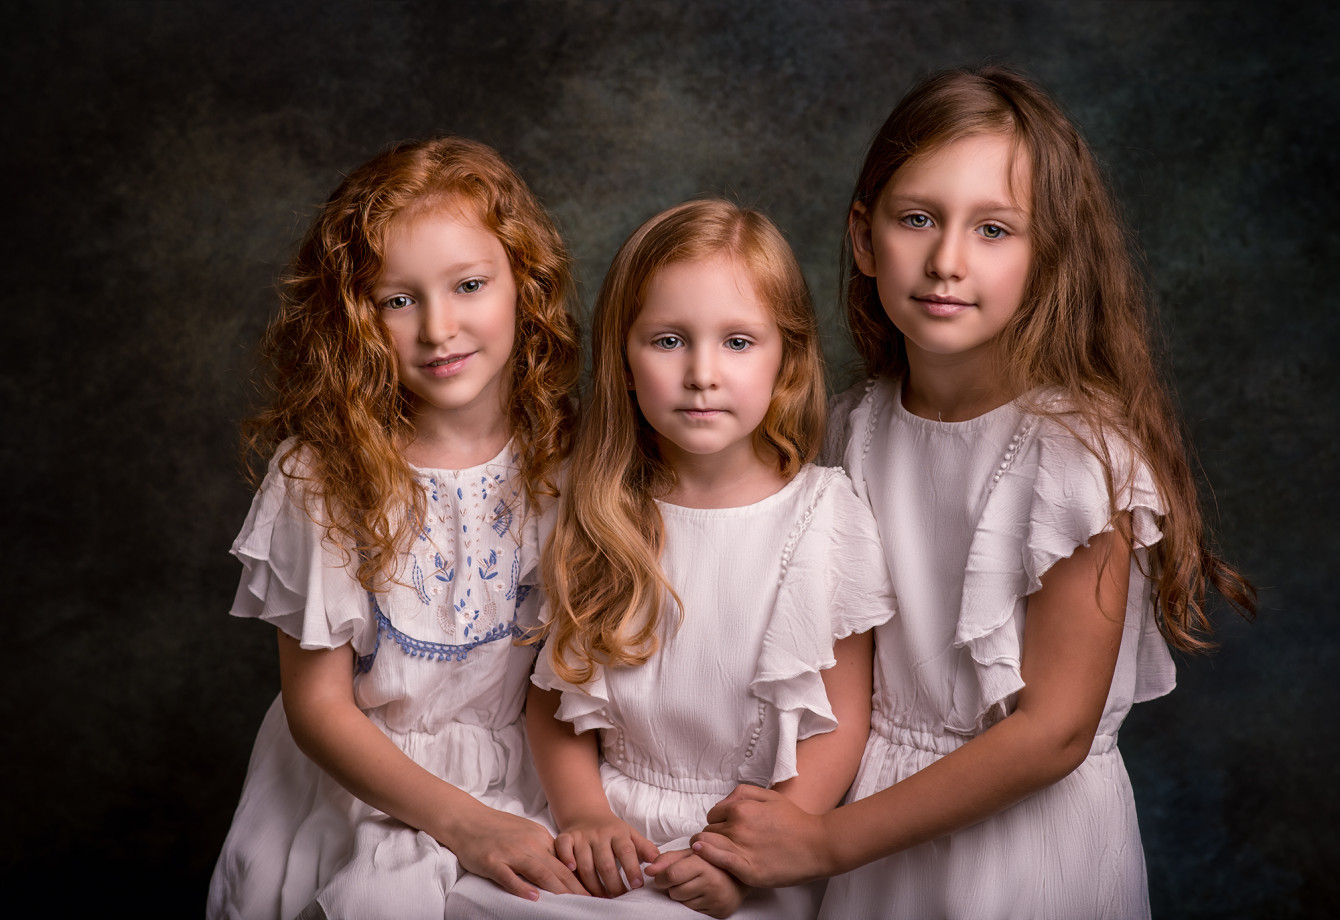 fotograf bedzin alicja-lelonek-ball portfolio zdjecia rodzinne fotografia rodzinna sesja